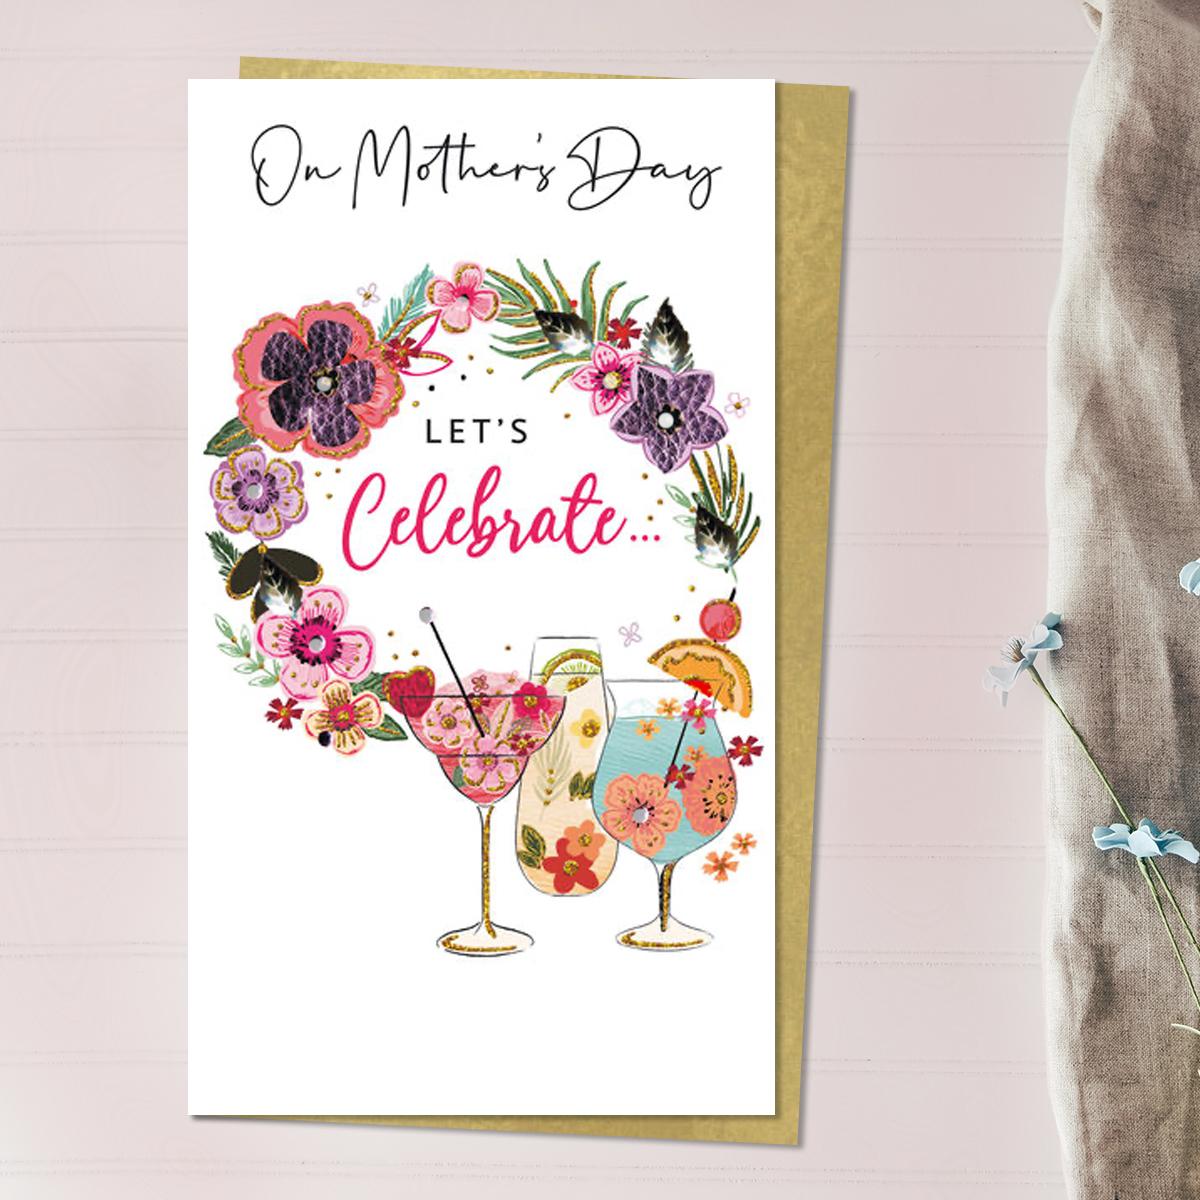 Let's Celebrate Mother's Day Design Alongside Its Gold Envelope